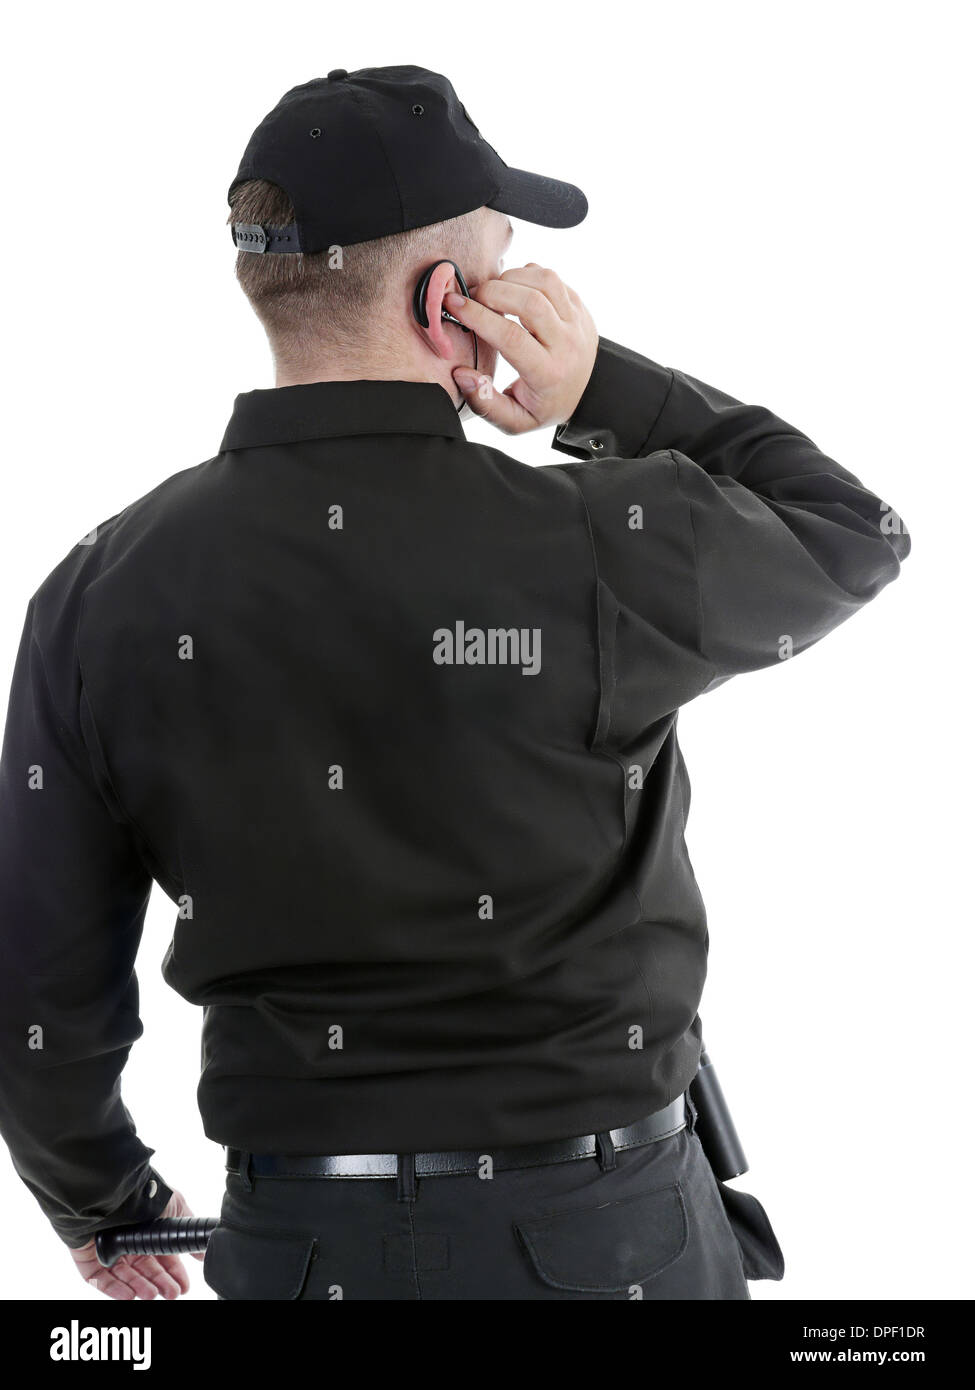 Homme portant l'uniforme noir de sécurité communique à l'aide de casque Banque D'Images